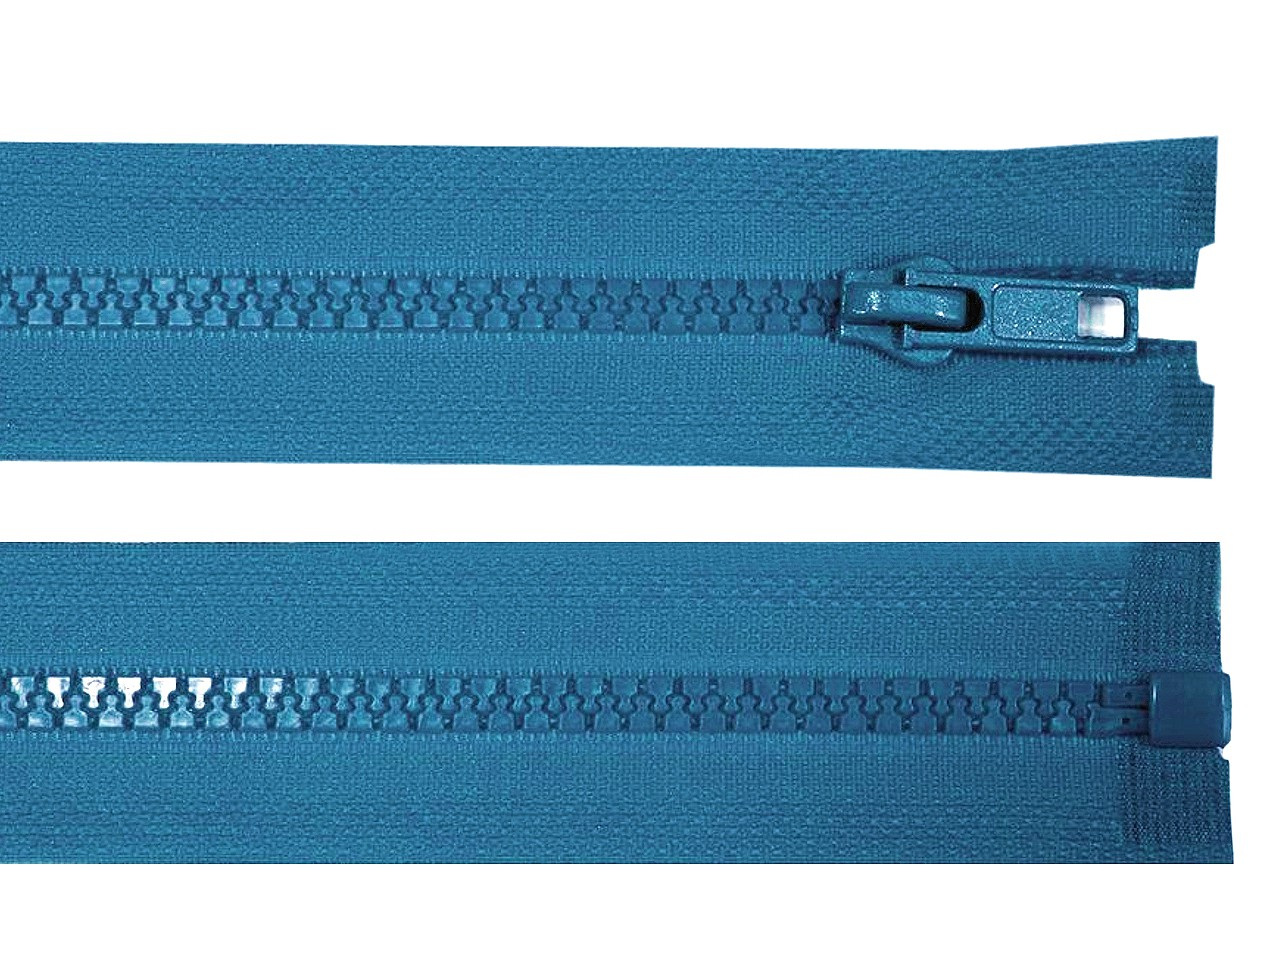 Kostěný zip No 5 délka 50 cm bundový, barva 216 modrá sytá